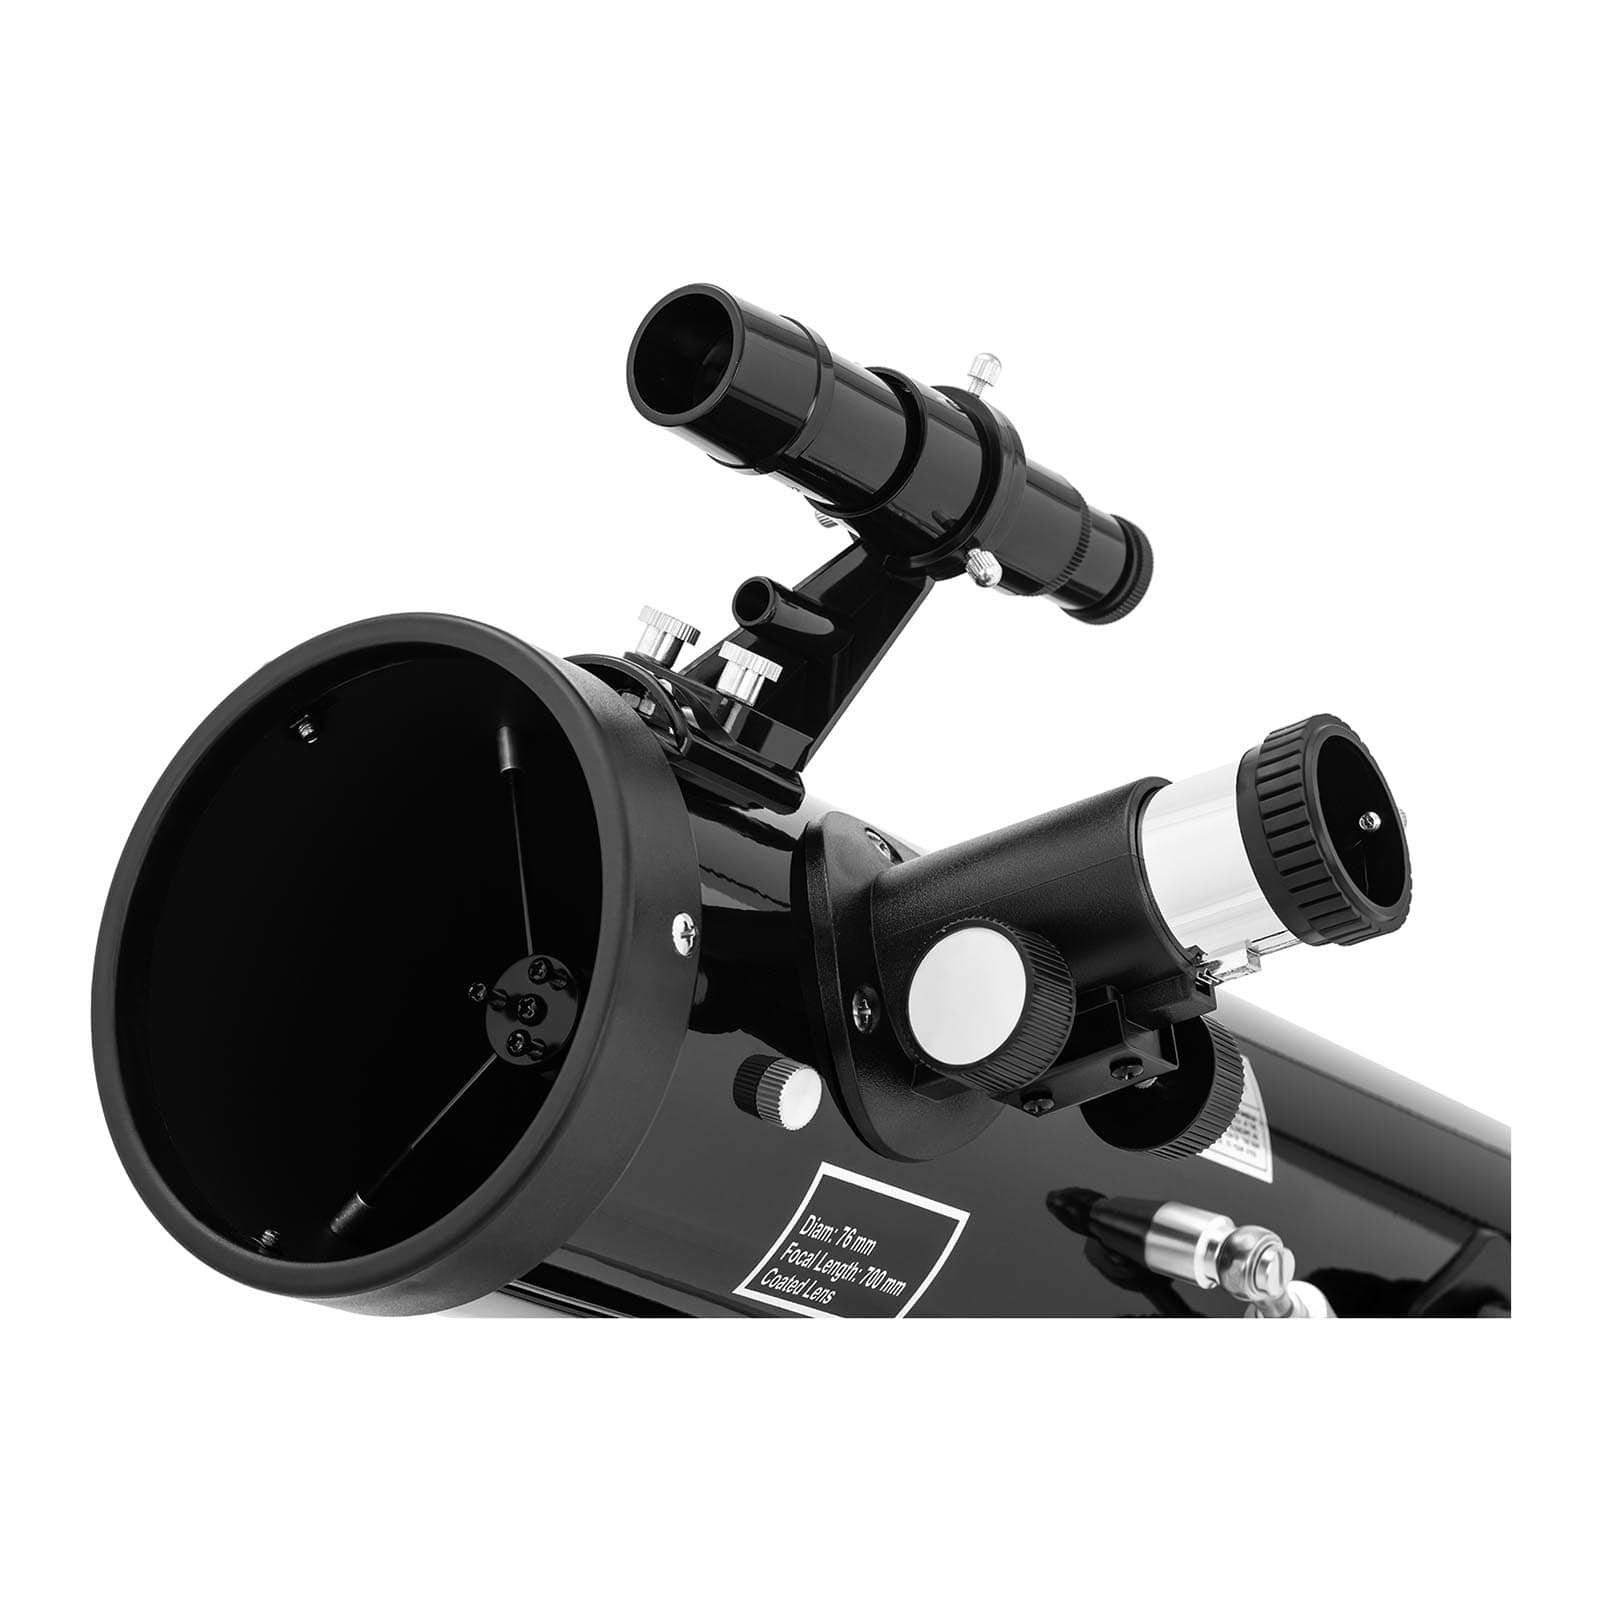 Uniprodo Teleskop Teleskop Spiegelteleskop Fernrohr 700 Astronomie Einsteiger Reflektor